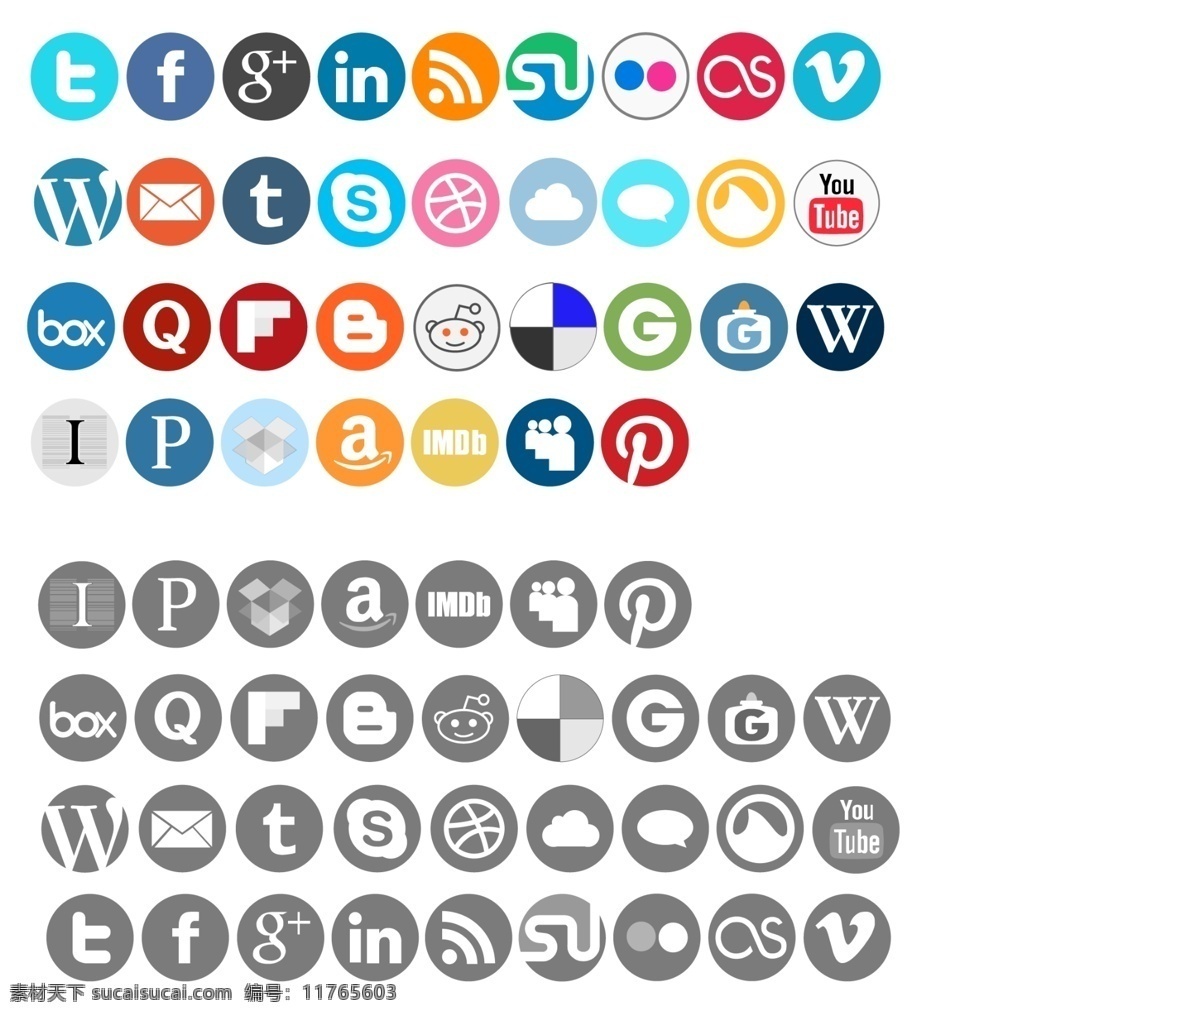 圆形 网页 社交 多媒体 图标 社交图标 多媒体图标 icon 社交icon 网页icon icon设计 苹果图标 wifi 汽车 网页图标